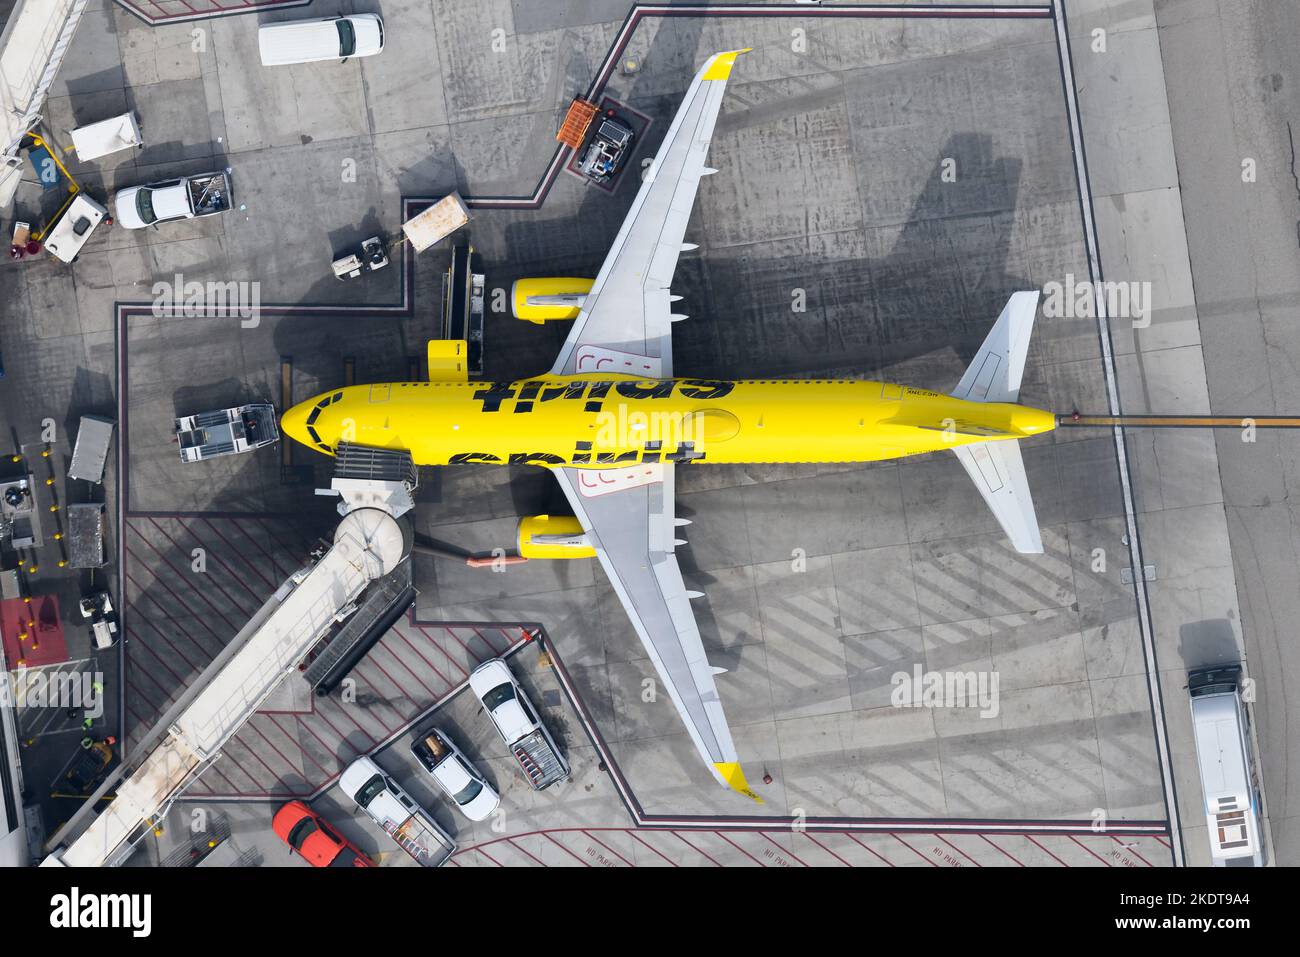 Aereo Spirit Airlines Airbus A320 parcheggiato al terminal. Compagnia aerea low cost dagli Stati Uniti con aerei in livrea gialla. Aereo A320 di Spirirt Airlines. Foto Stock